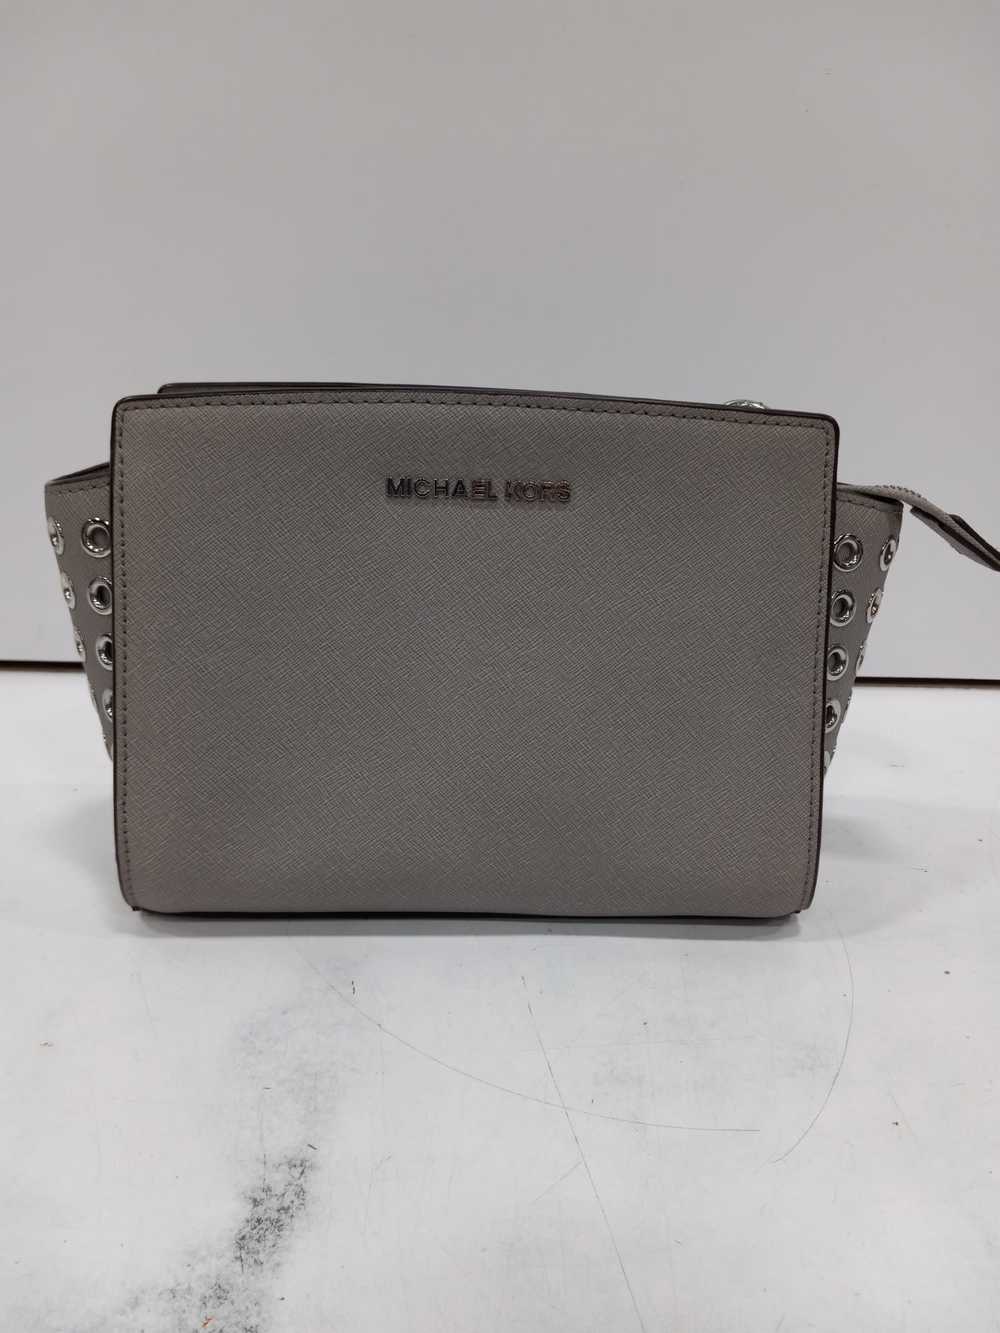 Michael Kors Selma Grey Leather Handbag - image 2